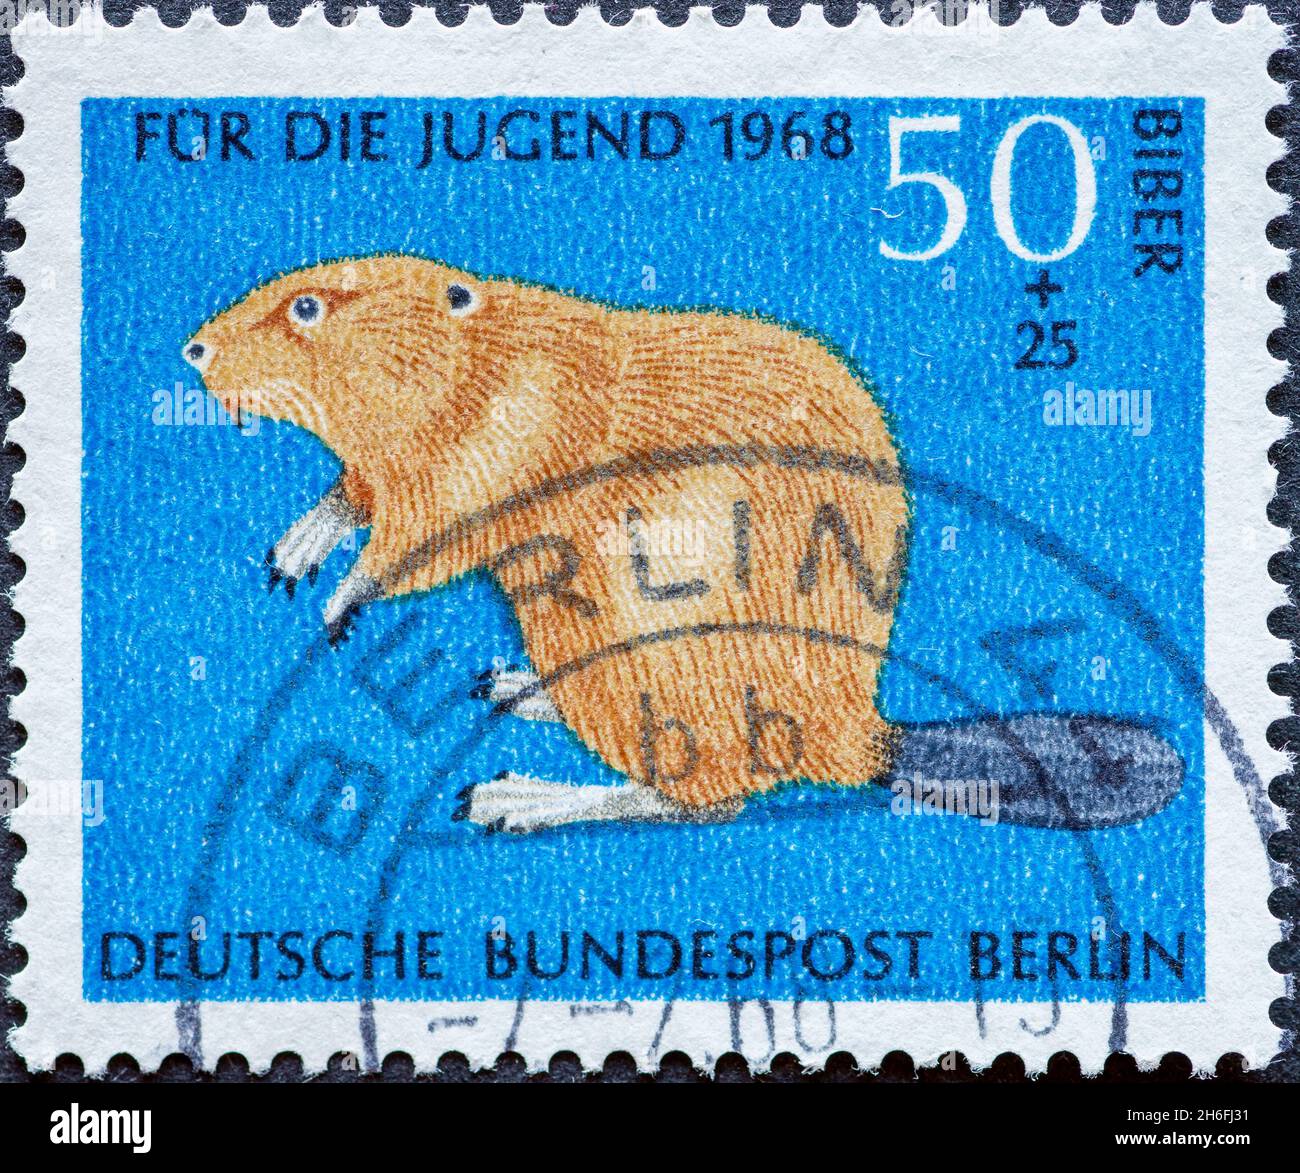 ALLEMAGNE, Berlin - VERS 1968: Timbre-poste de l'Allemagne, Berlin montrant des animaux sauvages rares. beaver. Timbre-poste de charité pour les jeunes Banque D'Images